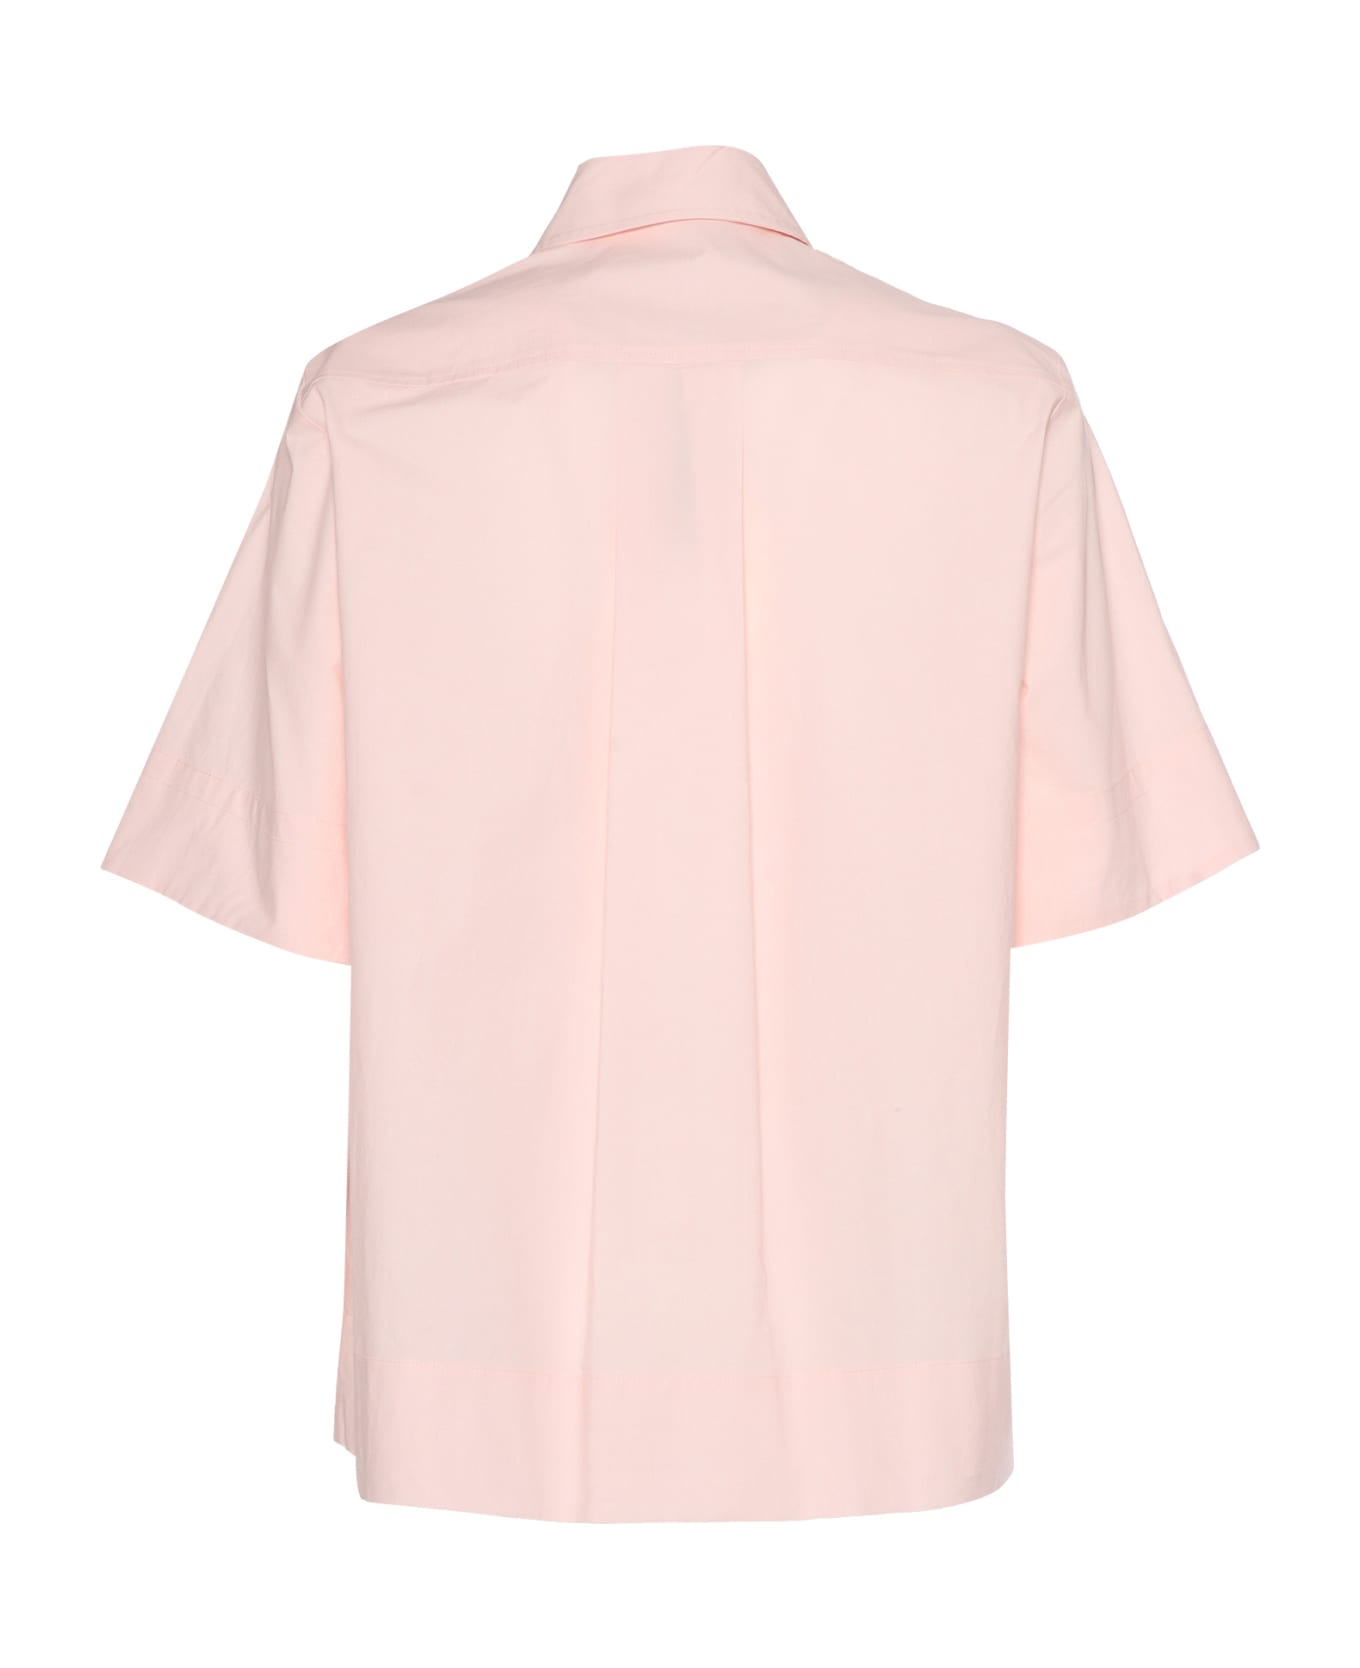 Parosh Pink Short-sleeved Shirt - PINK